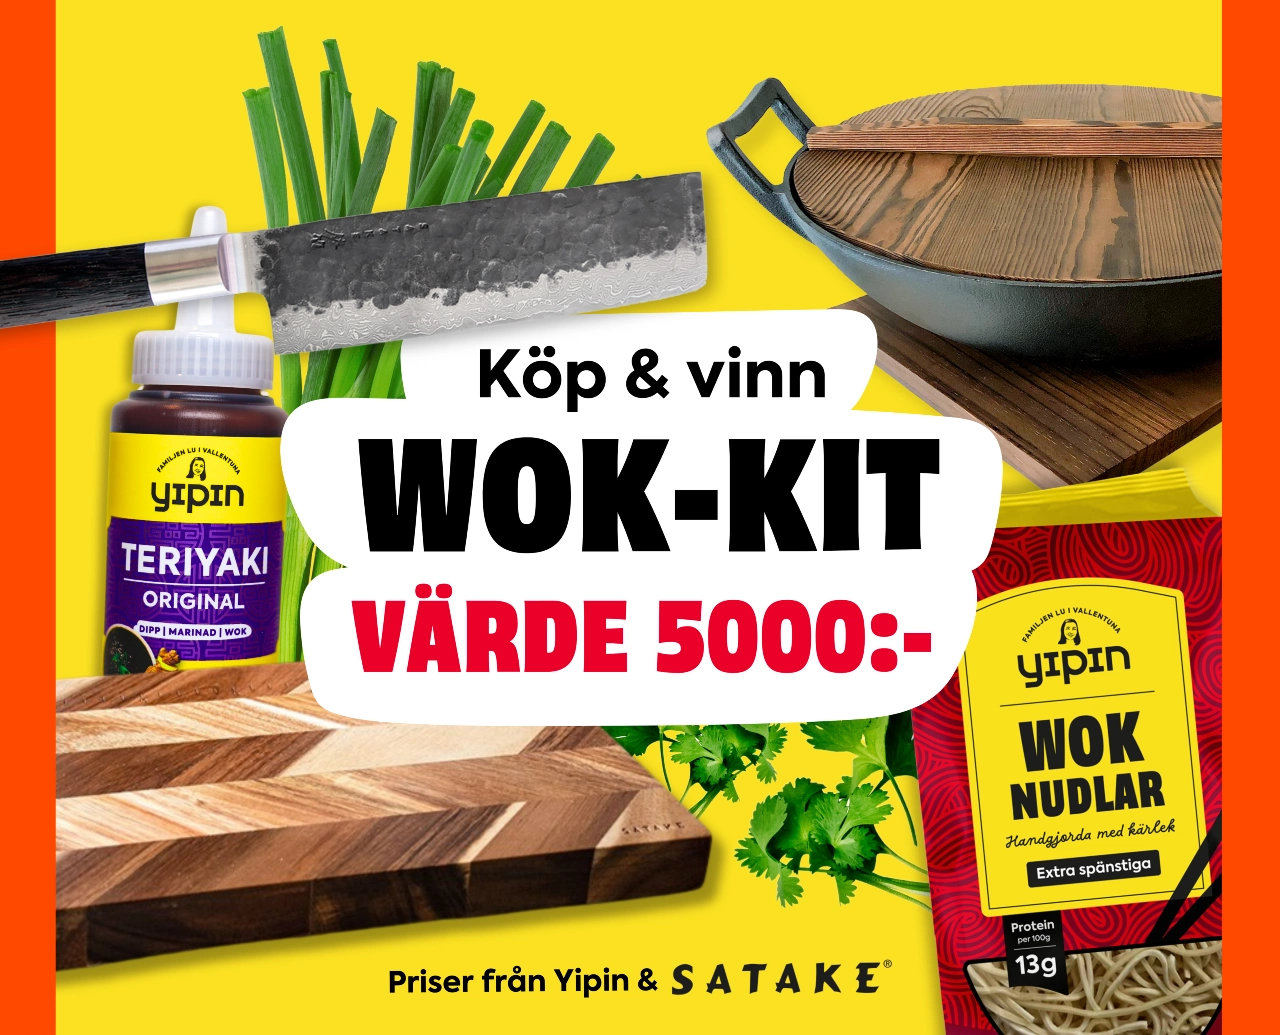 Yipin tävling - köp & vinn wok-kit värde 5000 kr